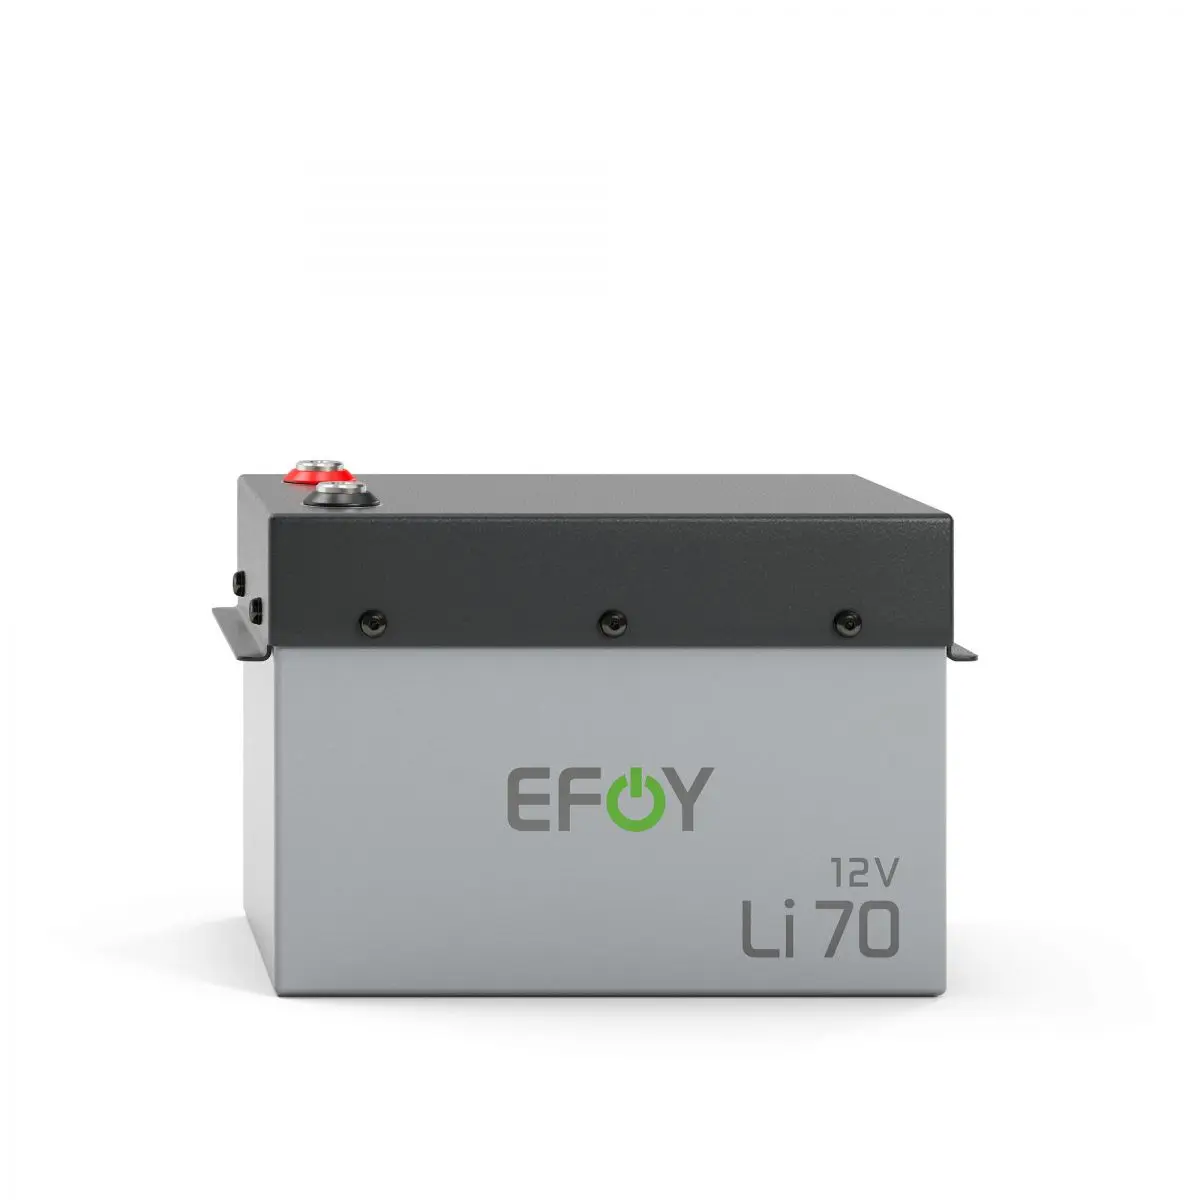 Lítium akkumulátor - EFOY Li 70 típusú